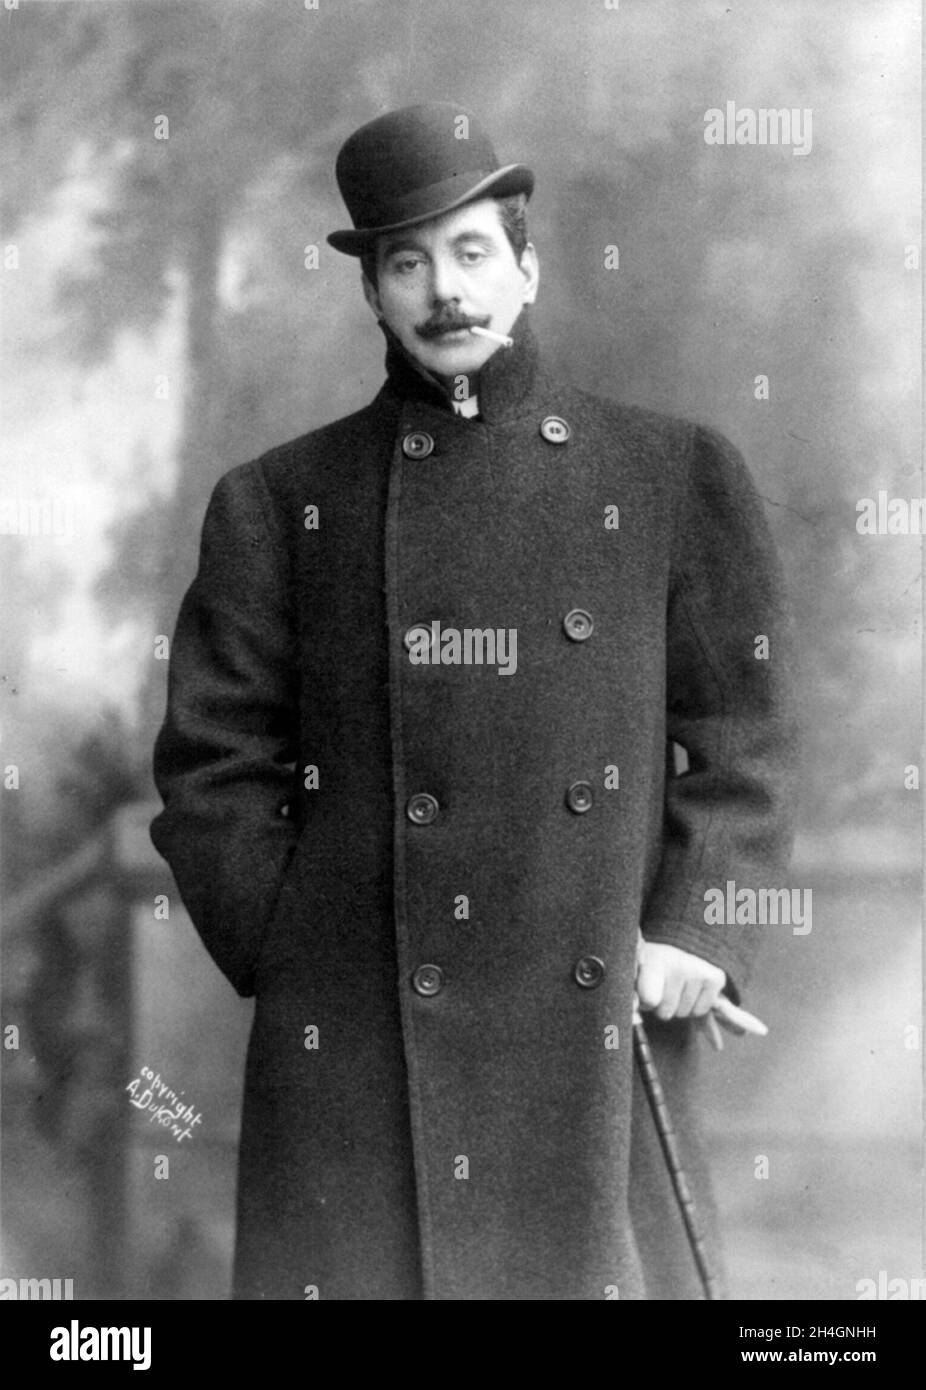 Un portrait du compositeur italien Giacomo Puccini Banque D'Images